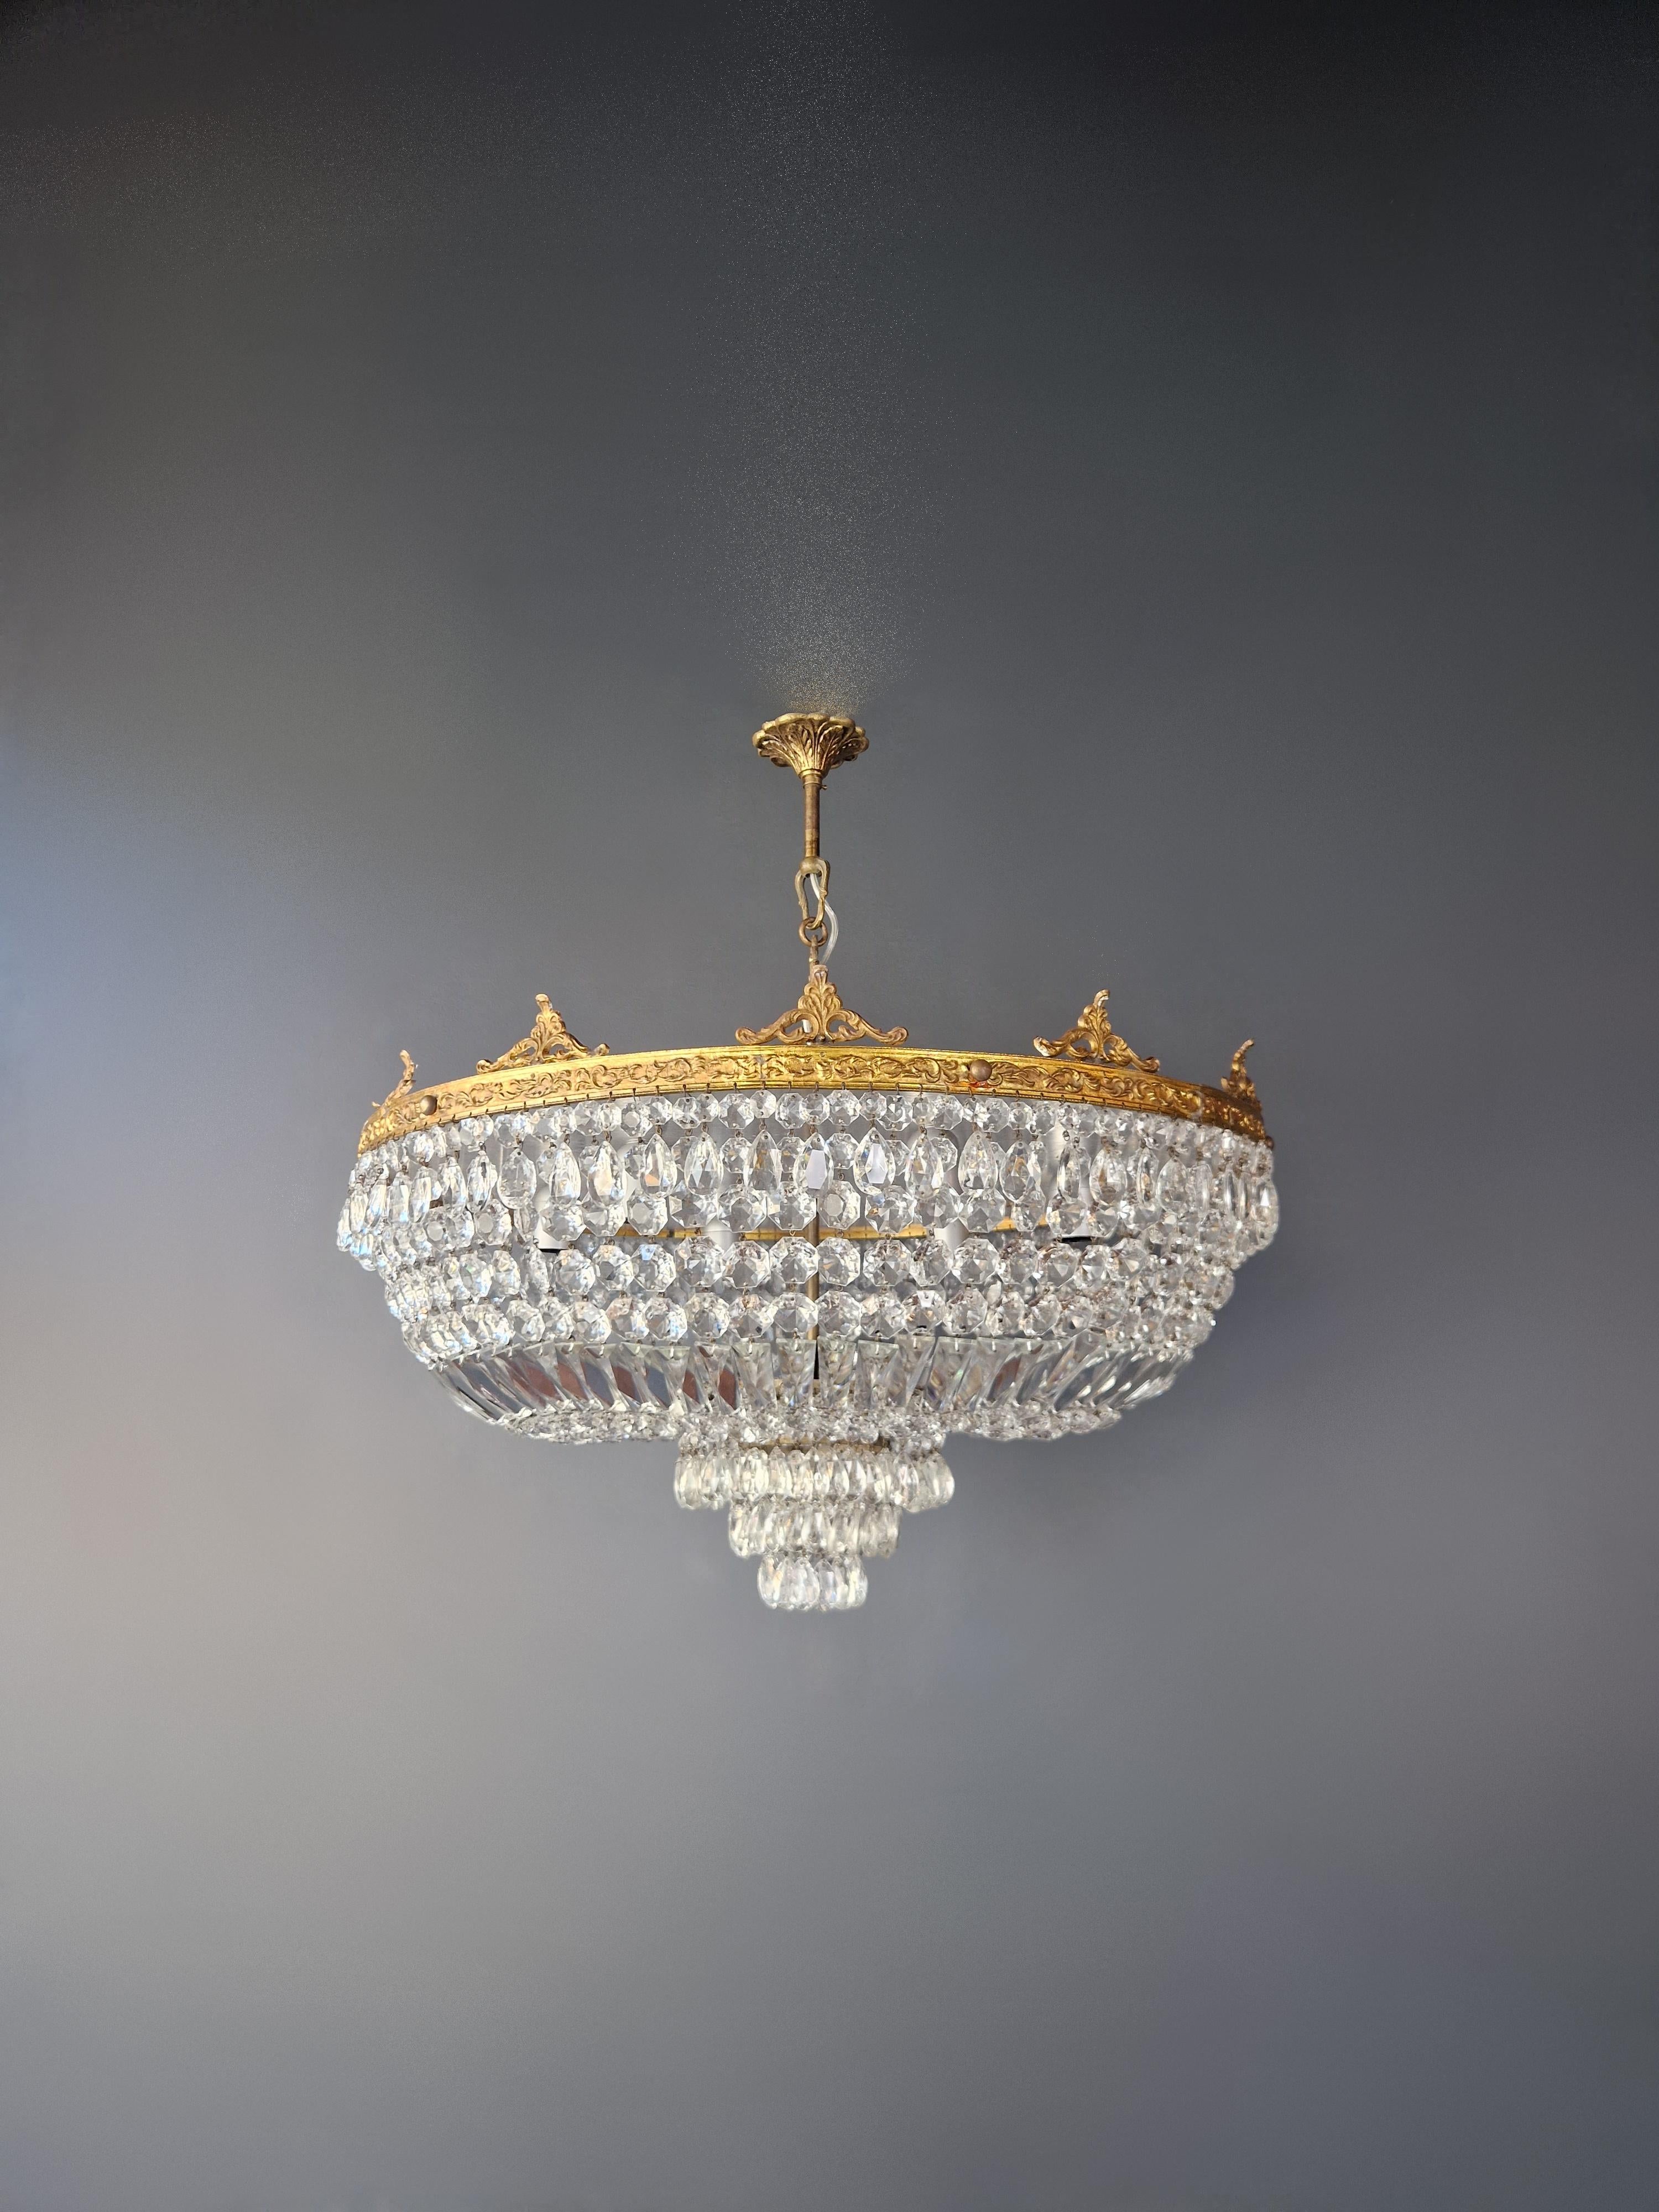 vintage gold crystal chandelier